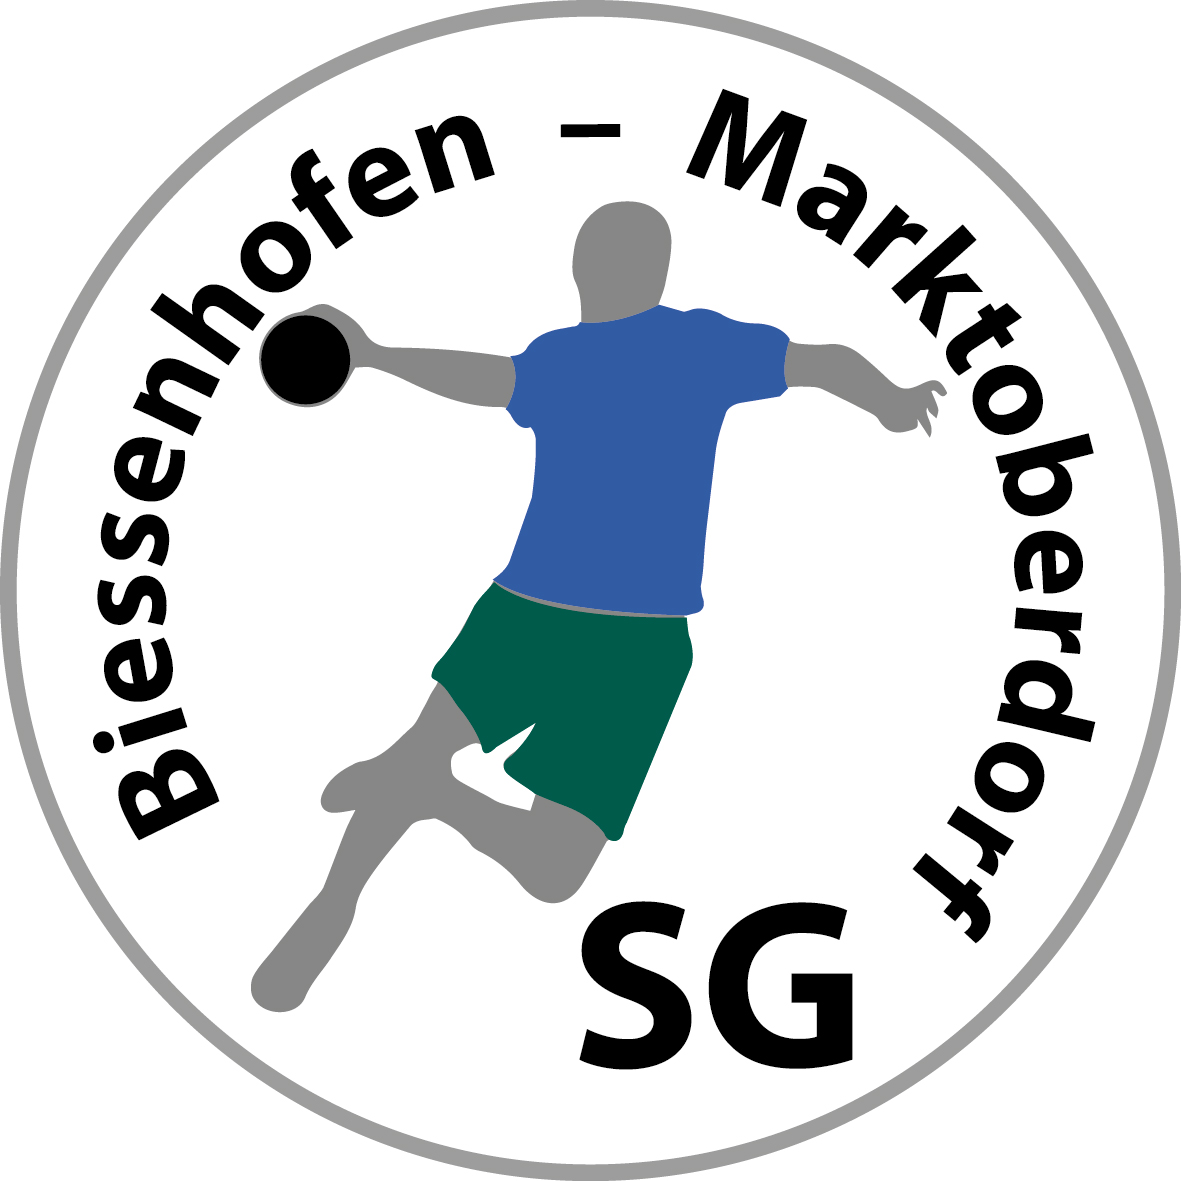 SG Biessenhofen-Marktoberdorf